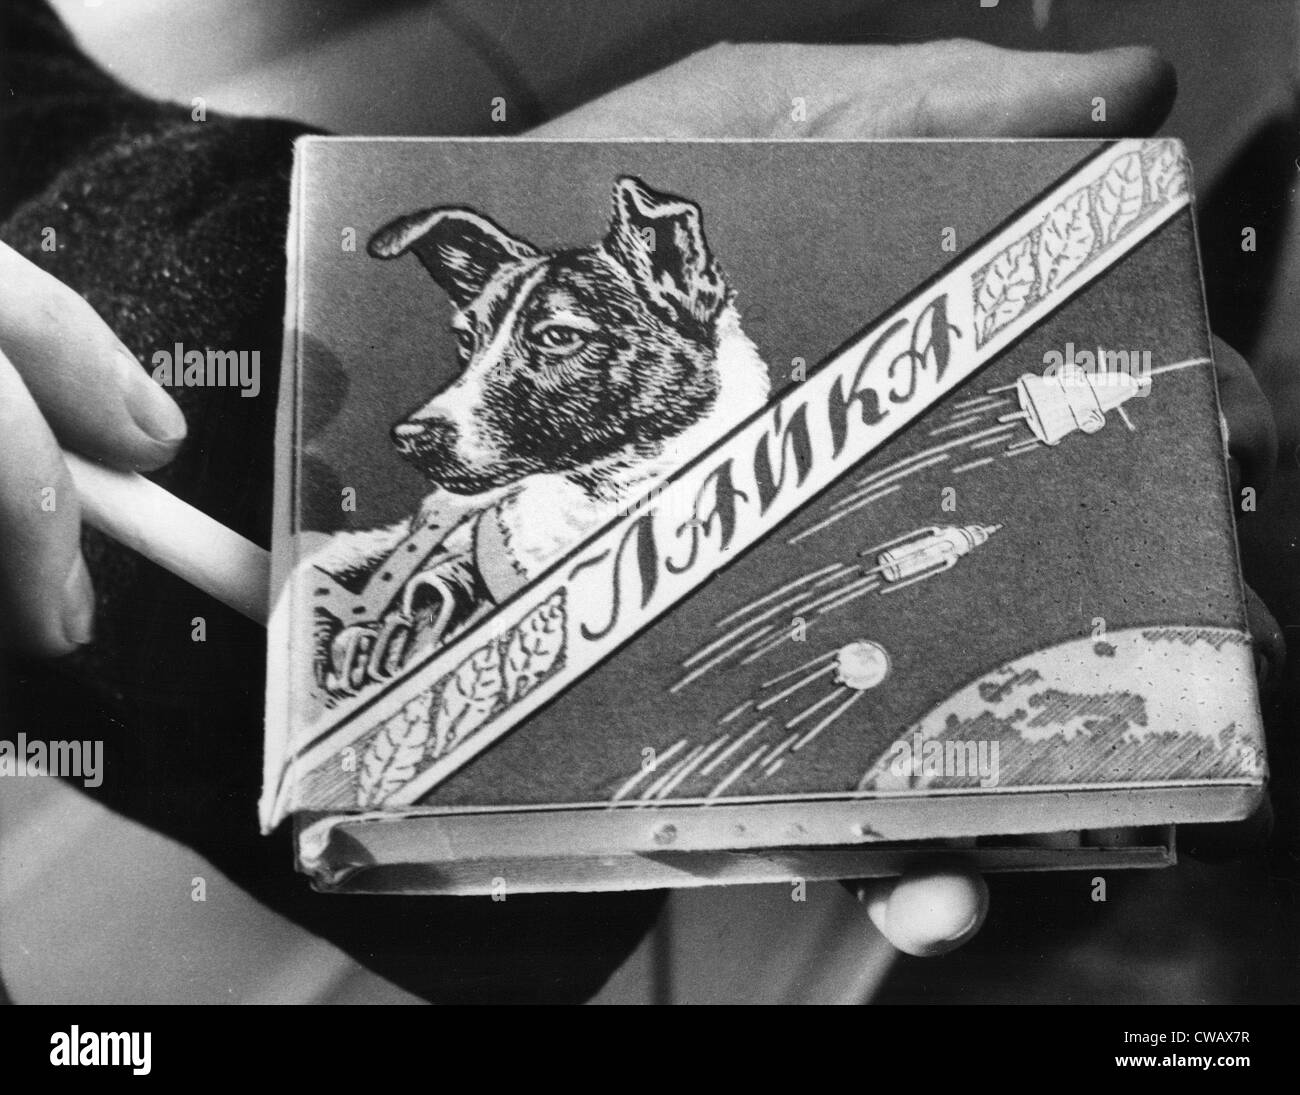 Le Laika dog spatiale russe, première créature en orbite autour de la terre est une marque de cigarettes qui porte son nom, 1960. Avec la permission de : CSU Banque D'Images